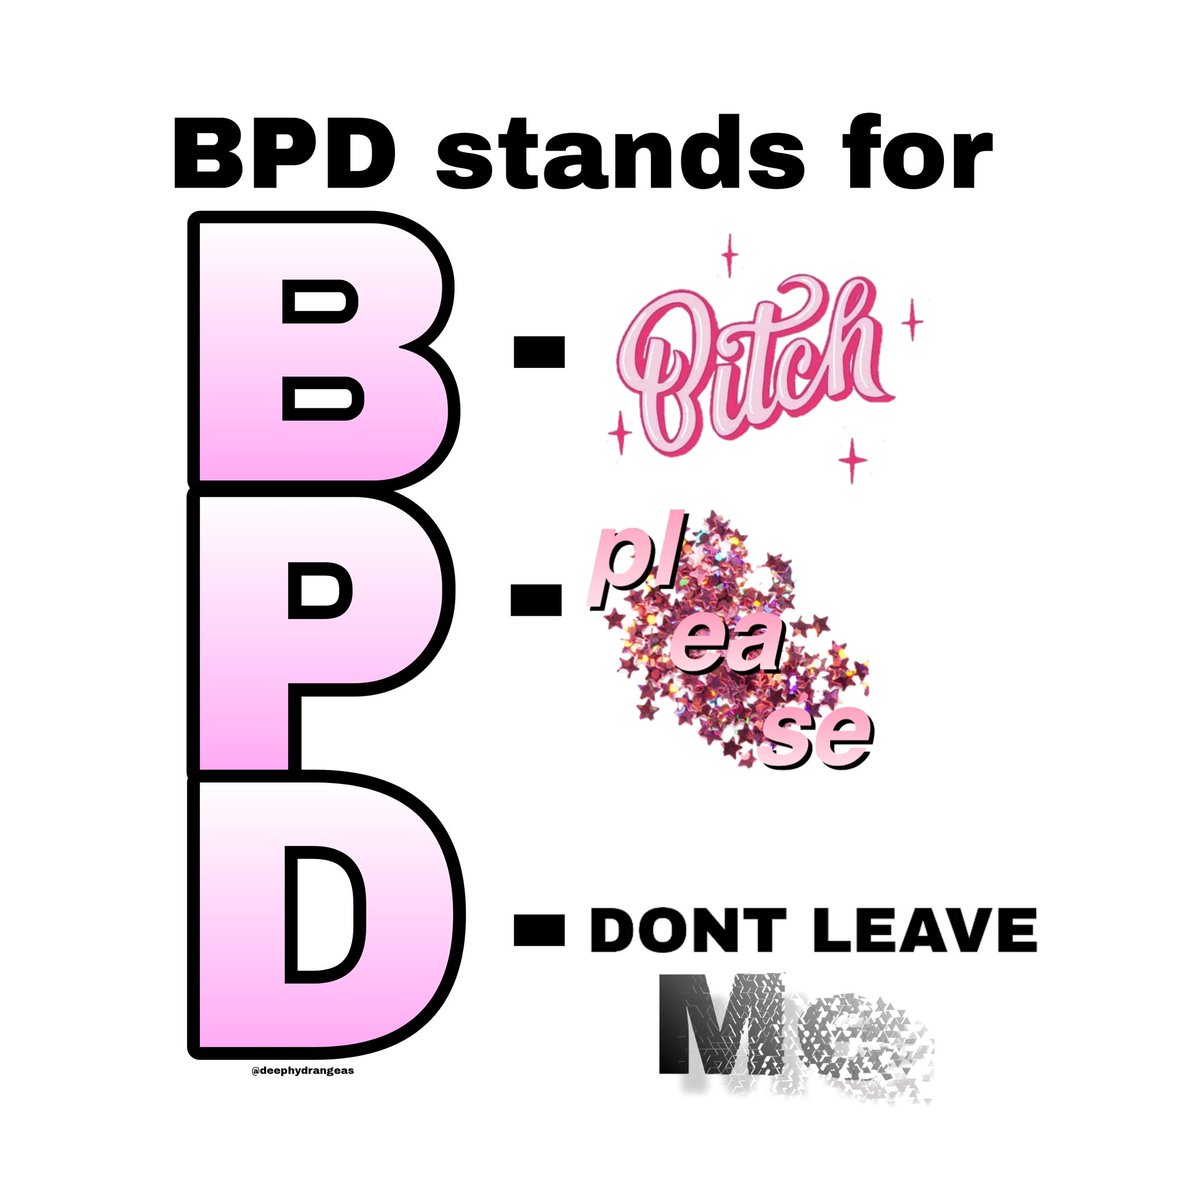 Please enjoy a very low effort #BPD meme